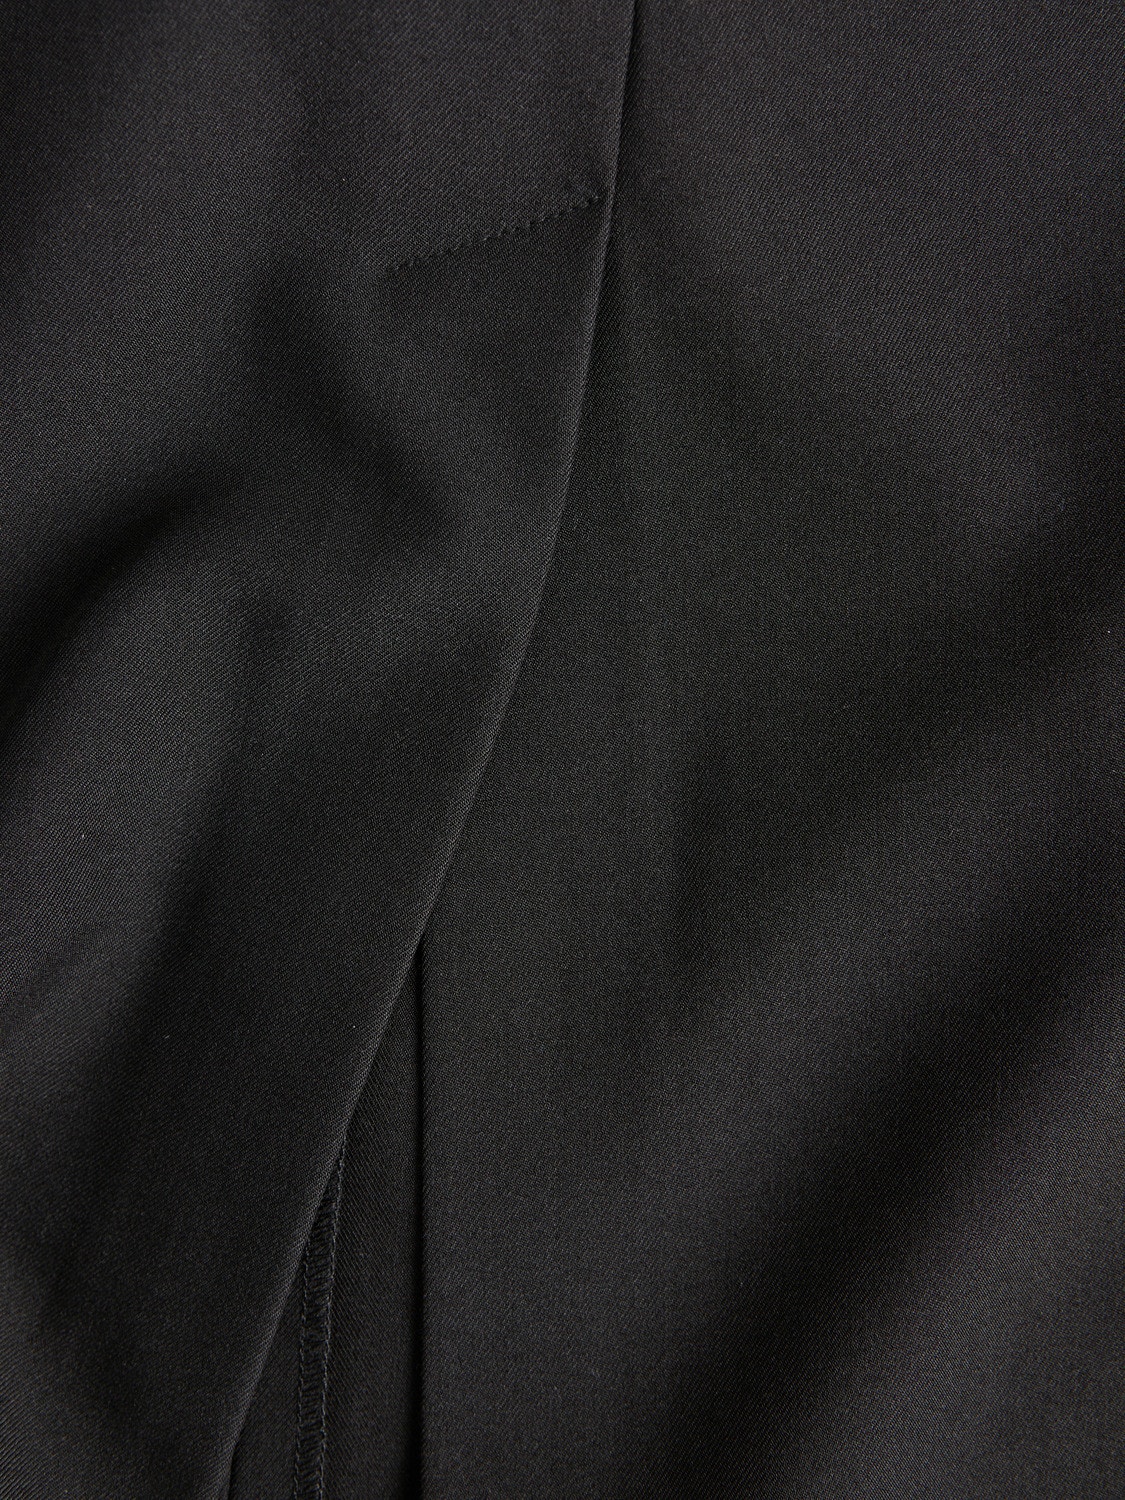 JJXX JXMARY Skirt -Black - 12200588